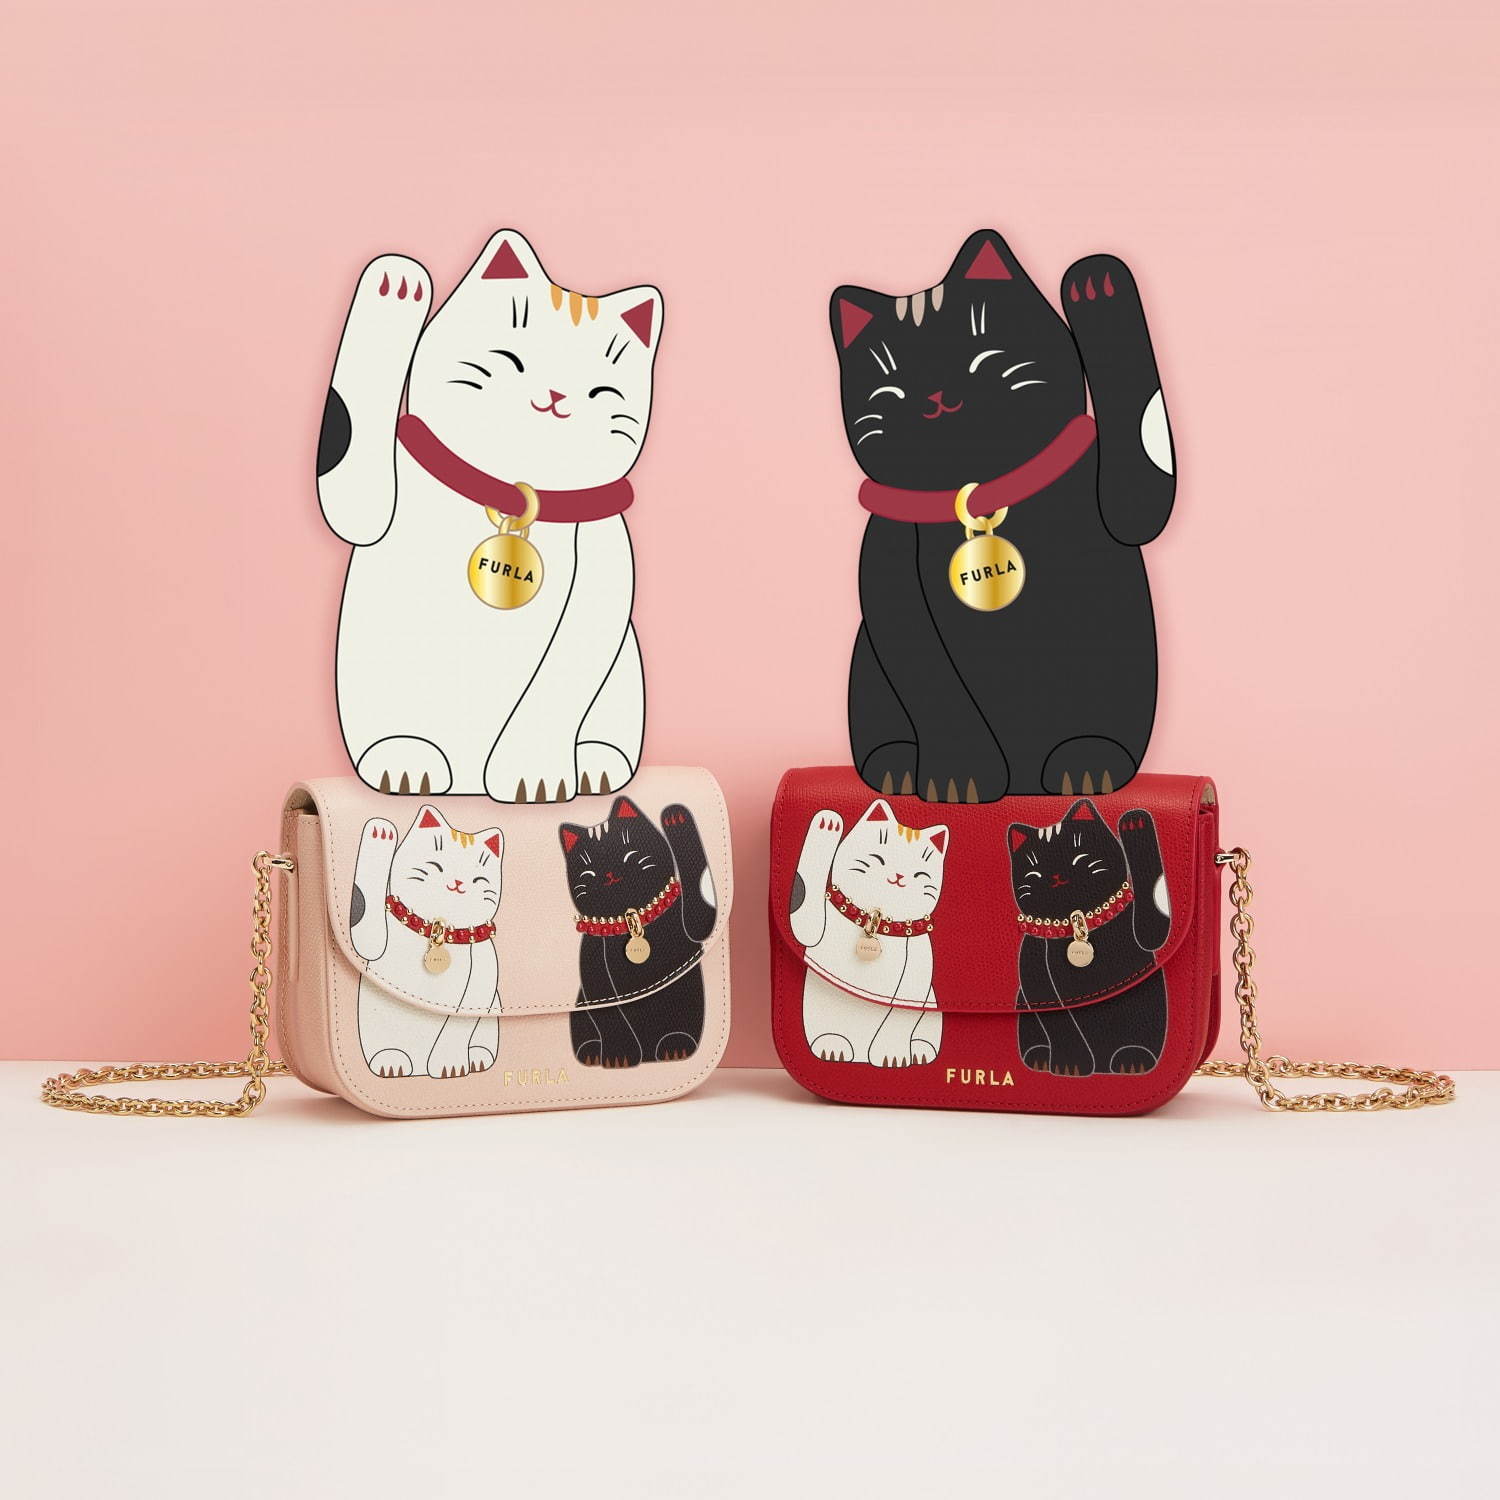 フルラ 開運 の象徴 招き猫 チェーンバッグや財布 ラッキーカラー ピンク レッド で ファッションプレス